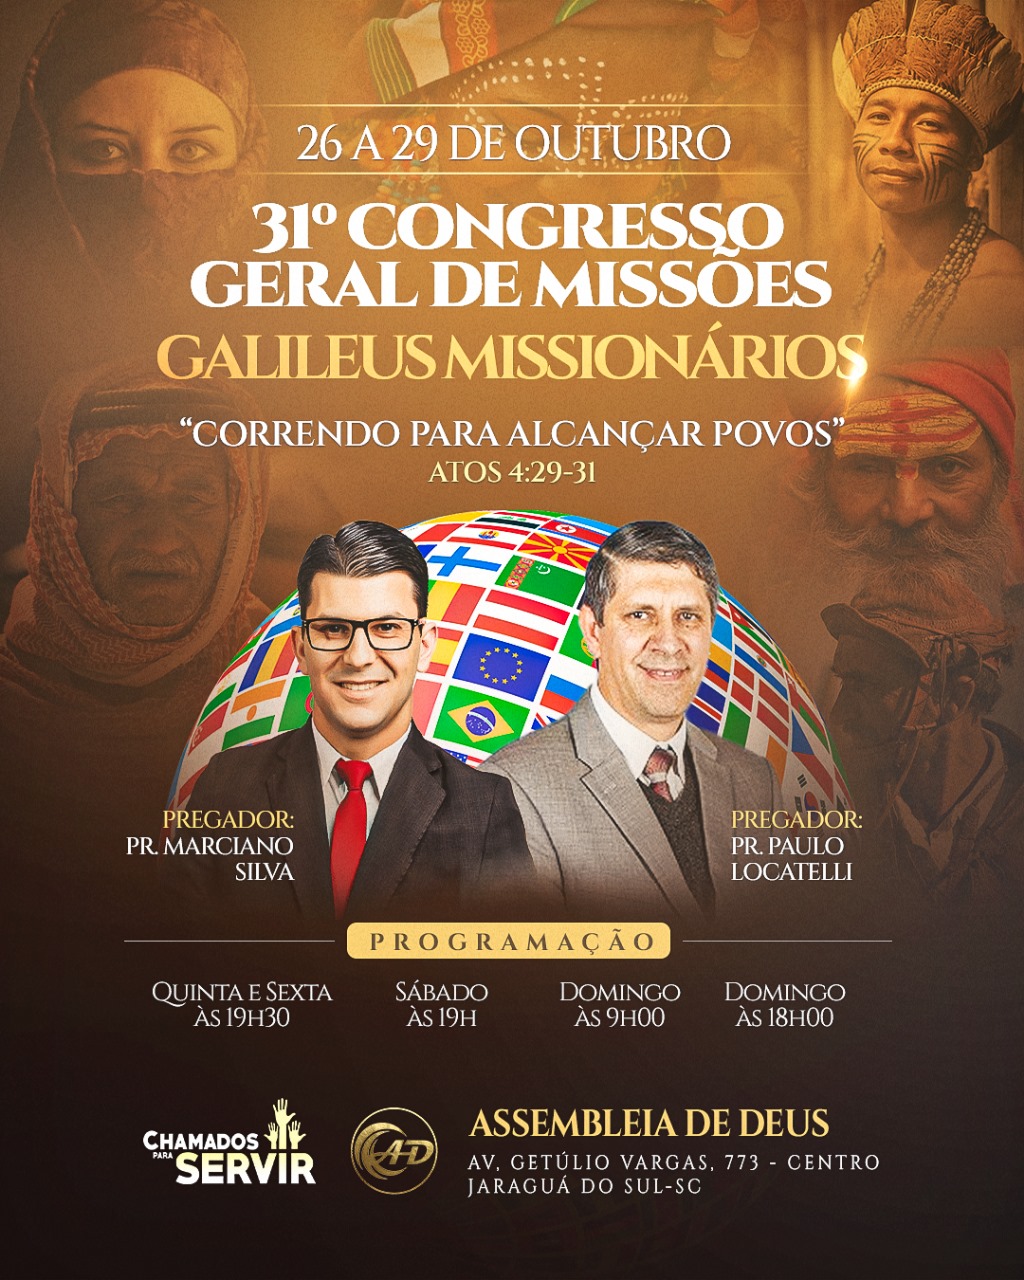 31º Congresso de Missões dos Galileus Missionários.